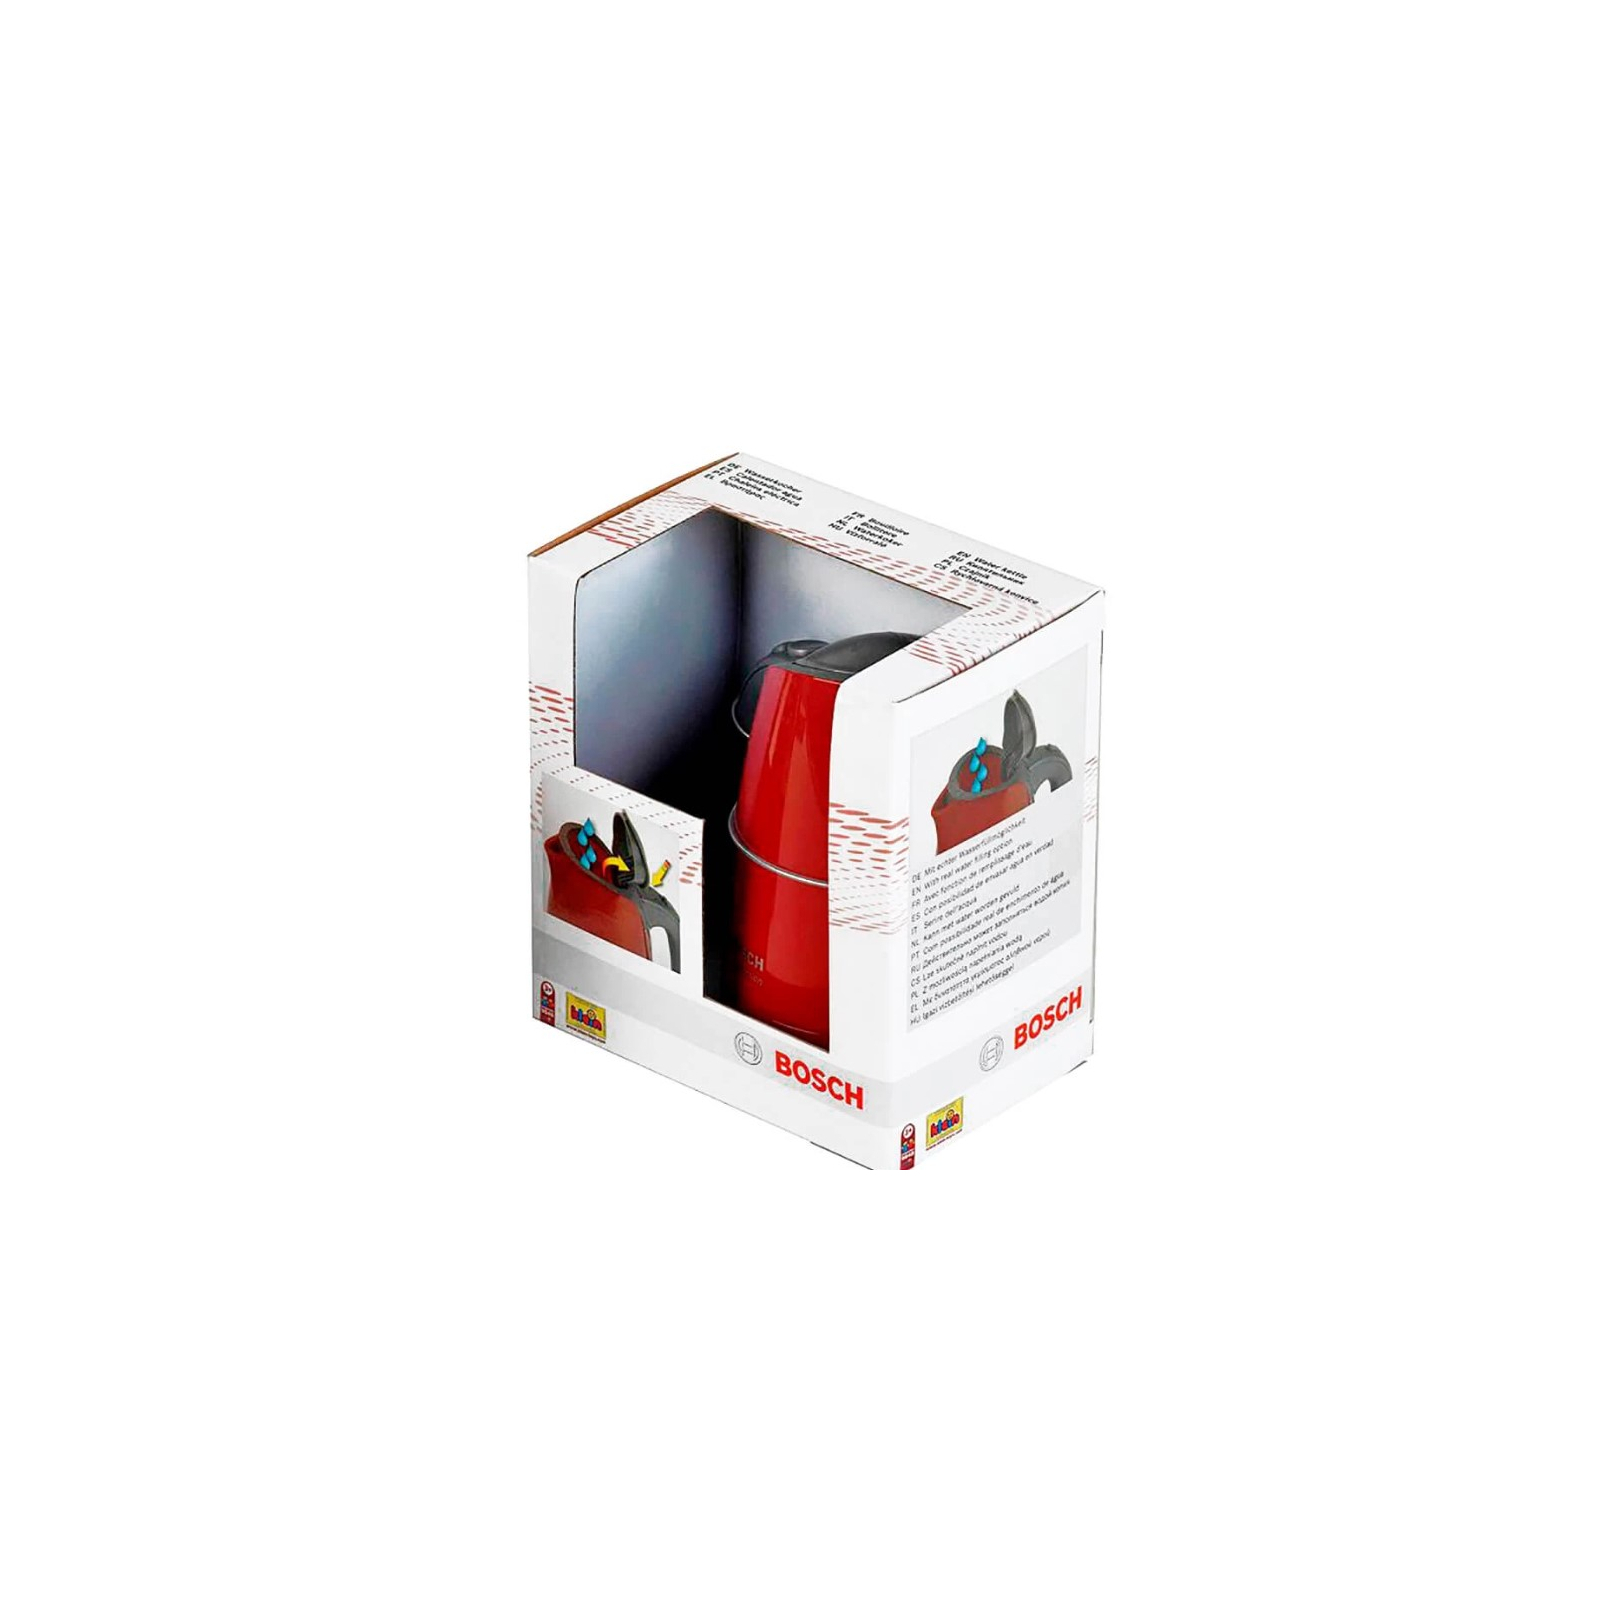 Ігровий набір Bosch Чайник , червоно-сірий (9548) зображення 2